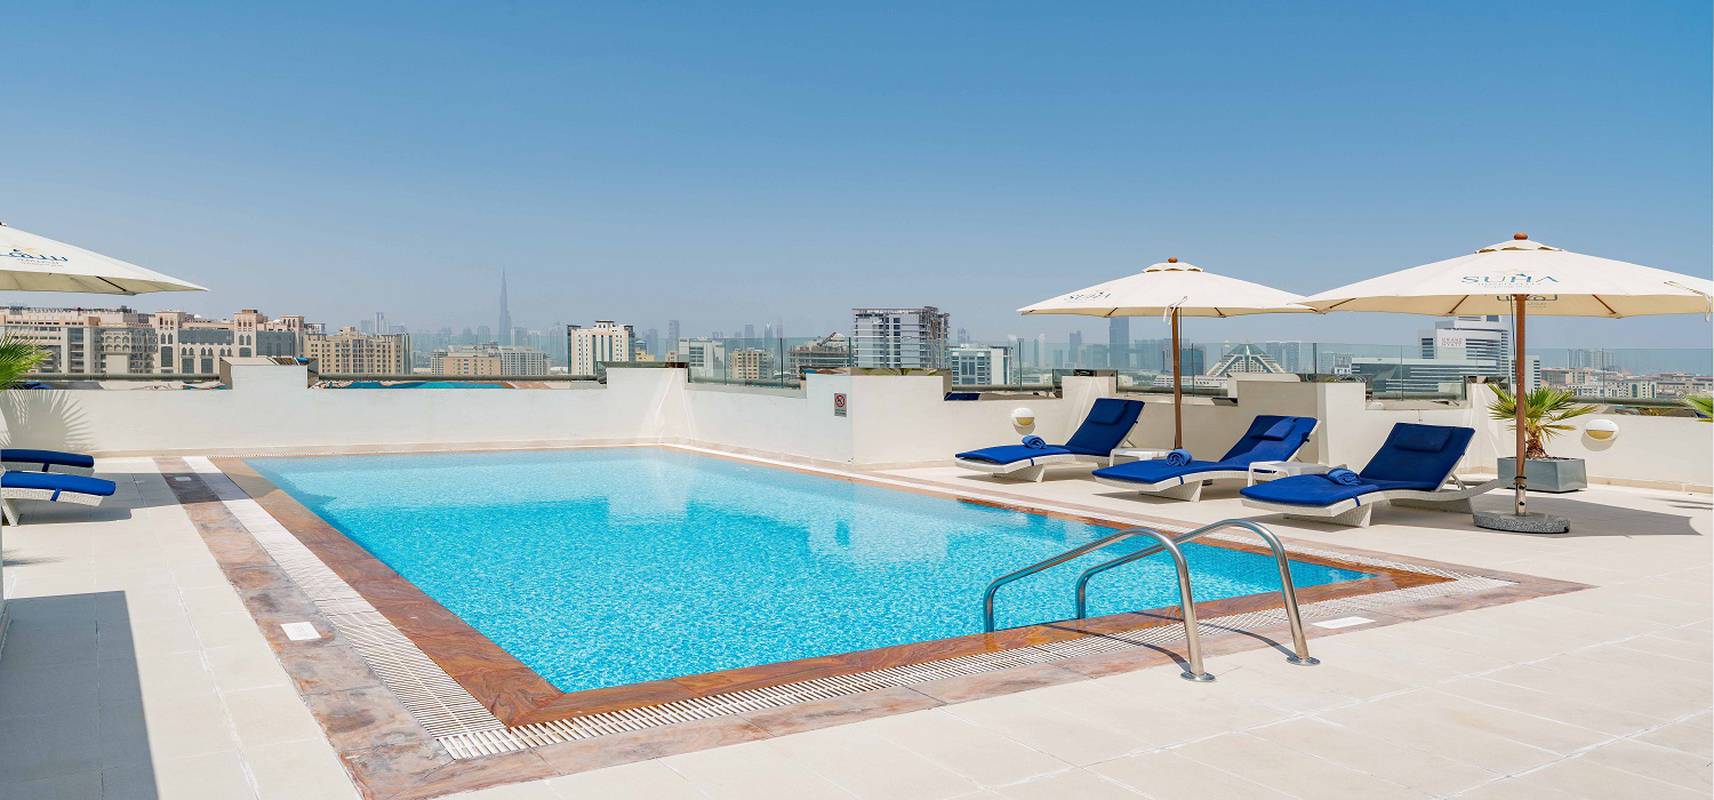 خدمات سها بارك الفندقية شقق دبي